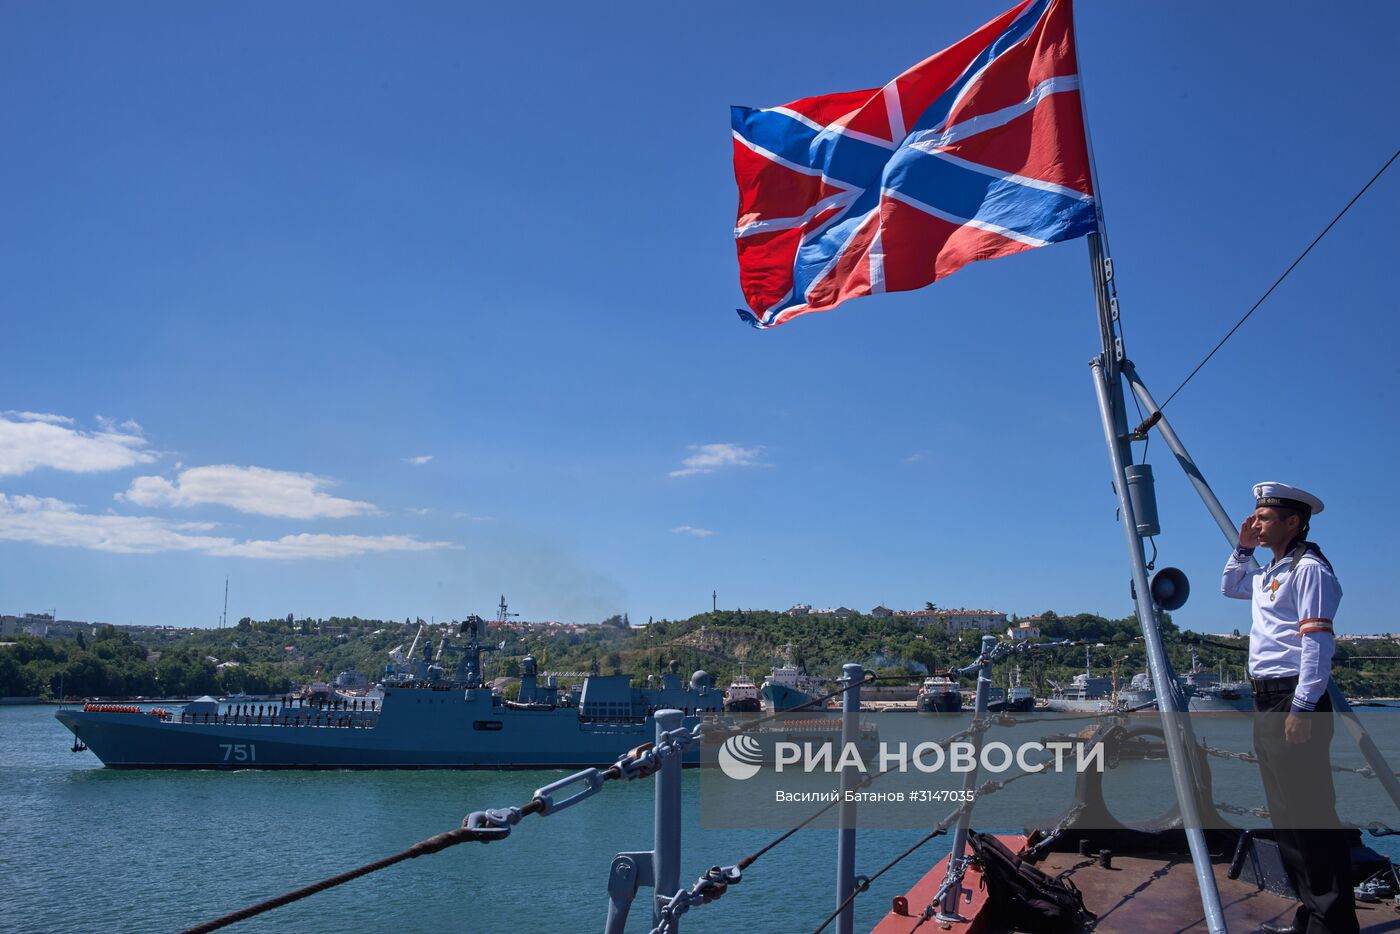 Фрегат "Адмирал Эссен" прибыл в Севастополь